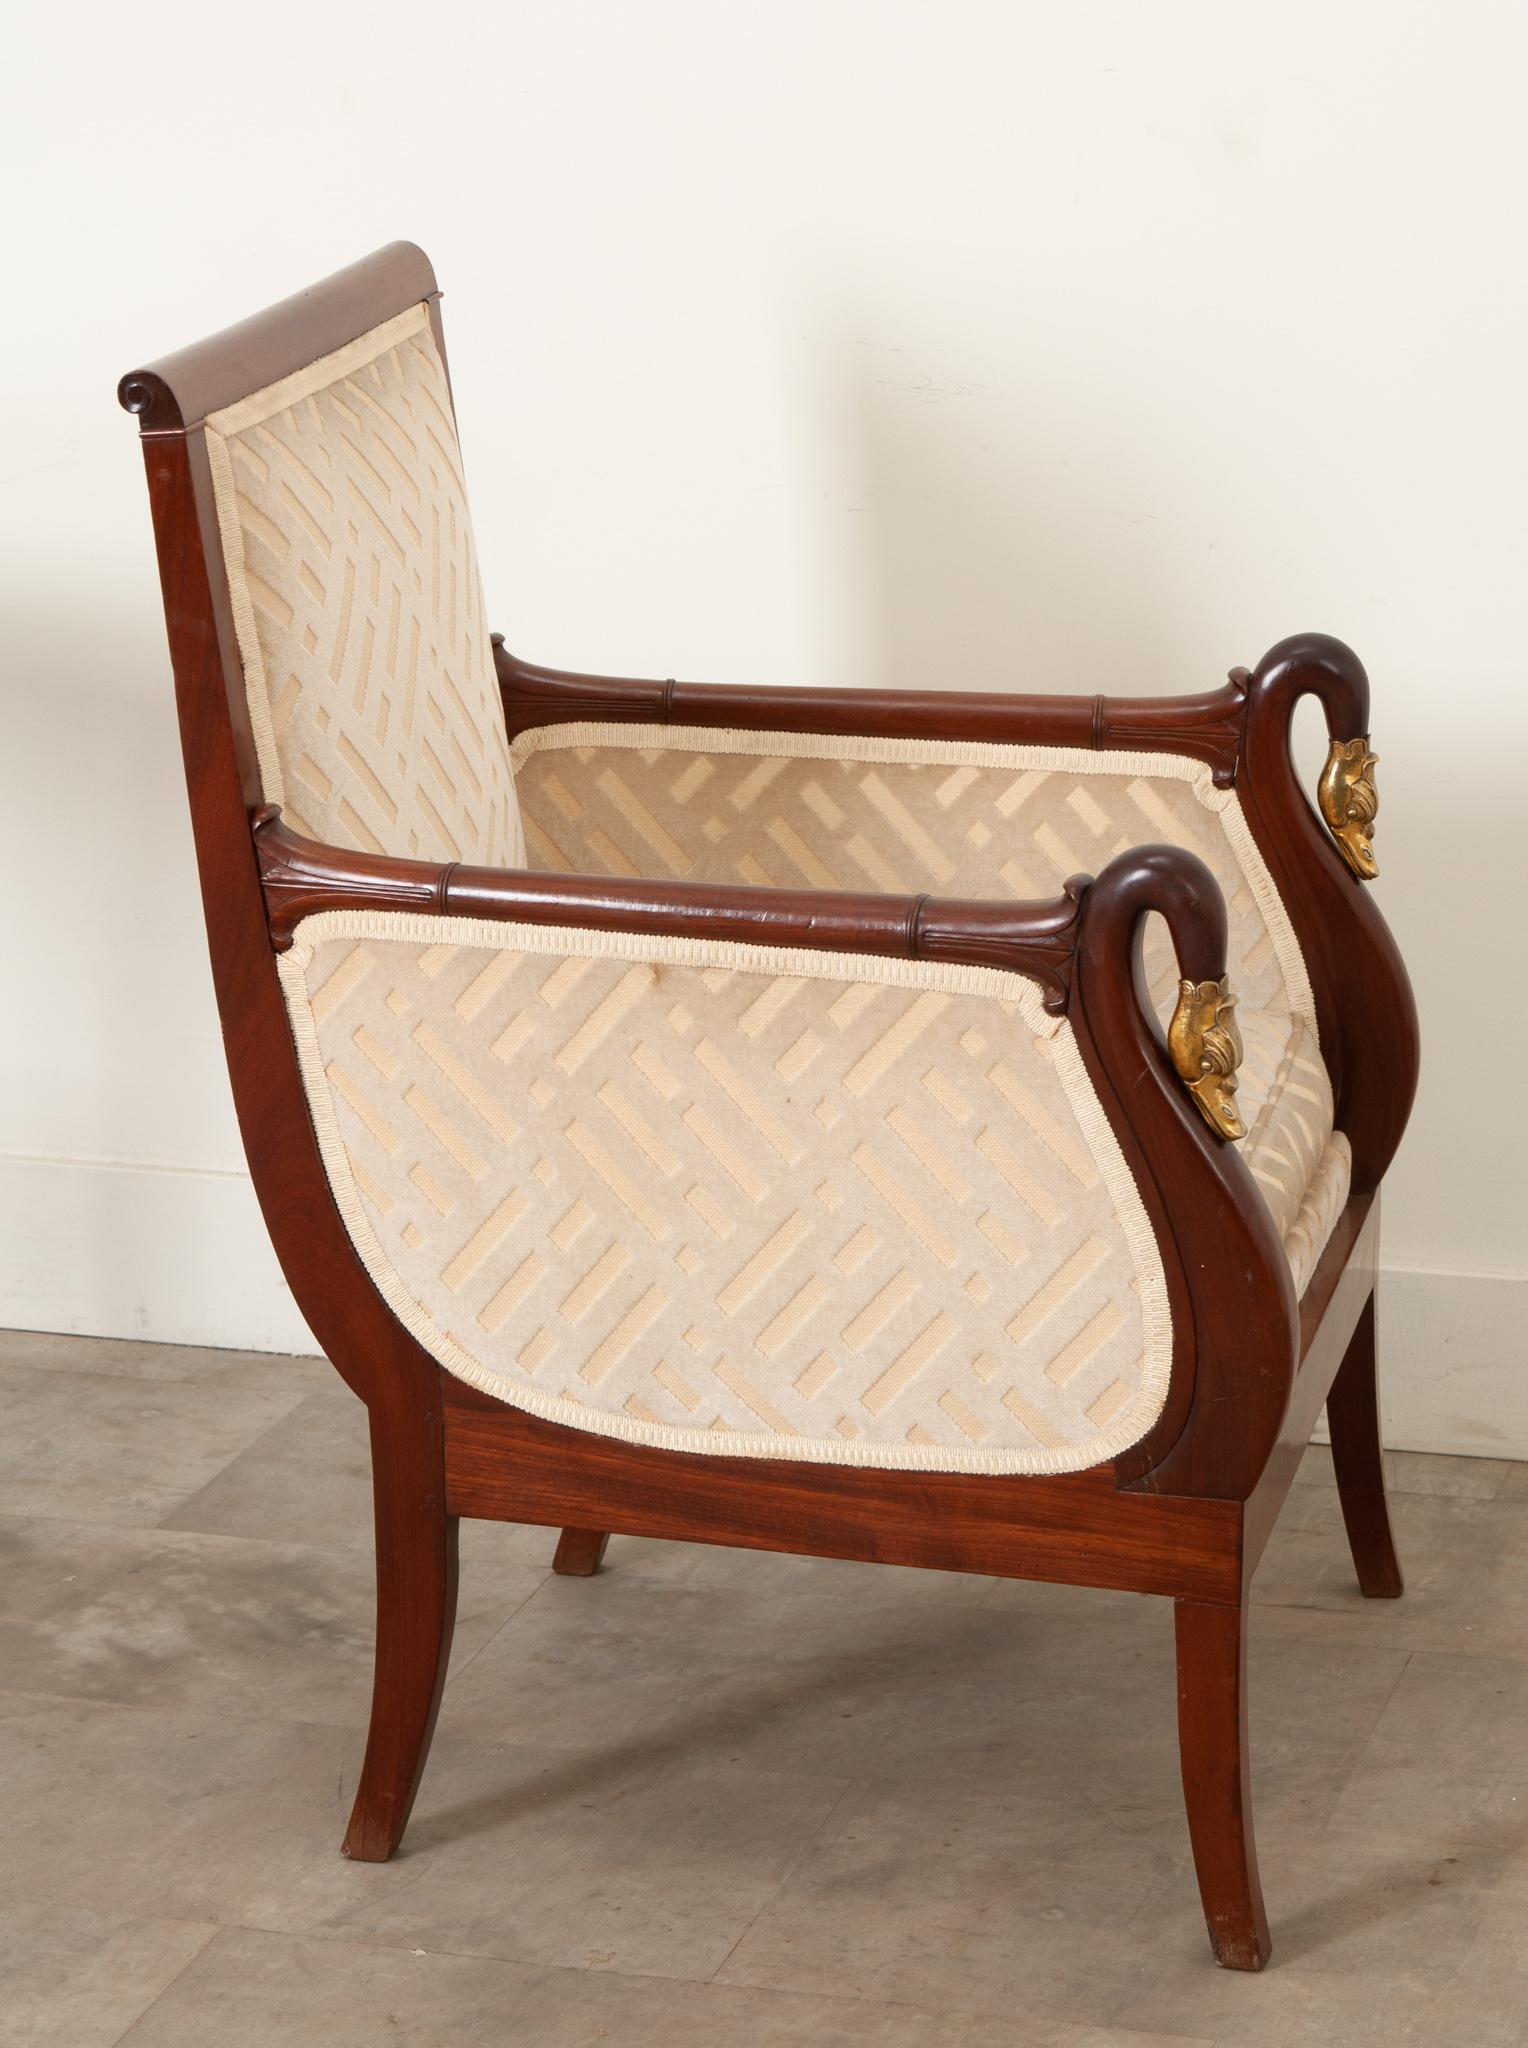 Diese restaurierte Einzel-Bergere ist aus massivem Mahagoniholz gefertigt und sehr stabil. Der Stuhl hat ein abgewinkeltes  Rückseite mit detaillierten Wappen, die in vergoldeten Schwänen enden. Dieser interessante antike Stuhl hat eine leicht